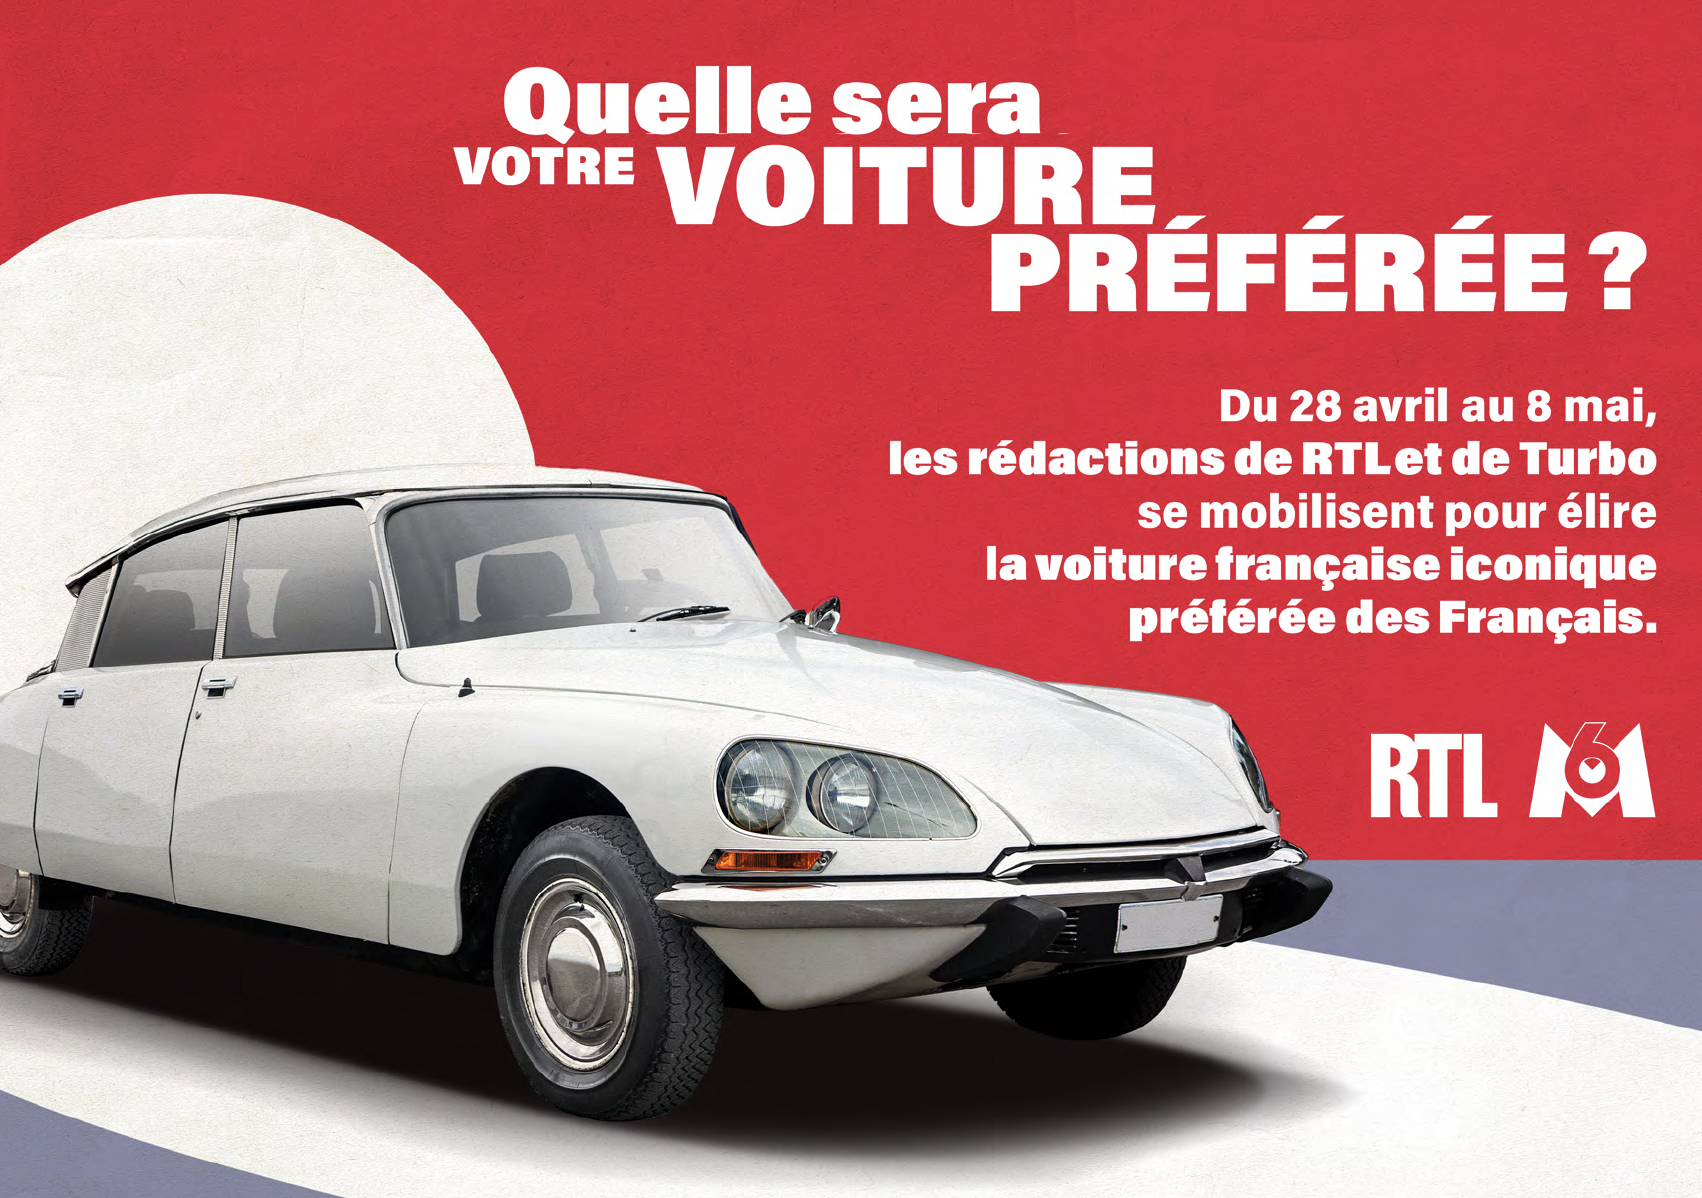 RTL organise l'élection de la voiture préférée des Français